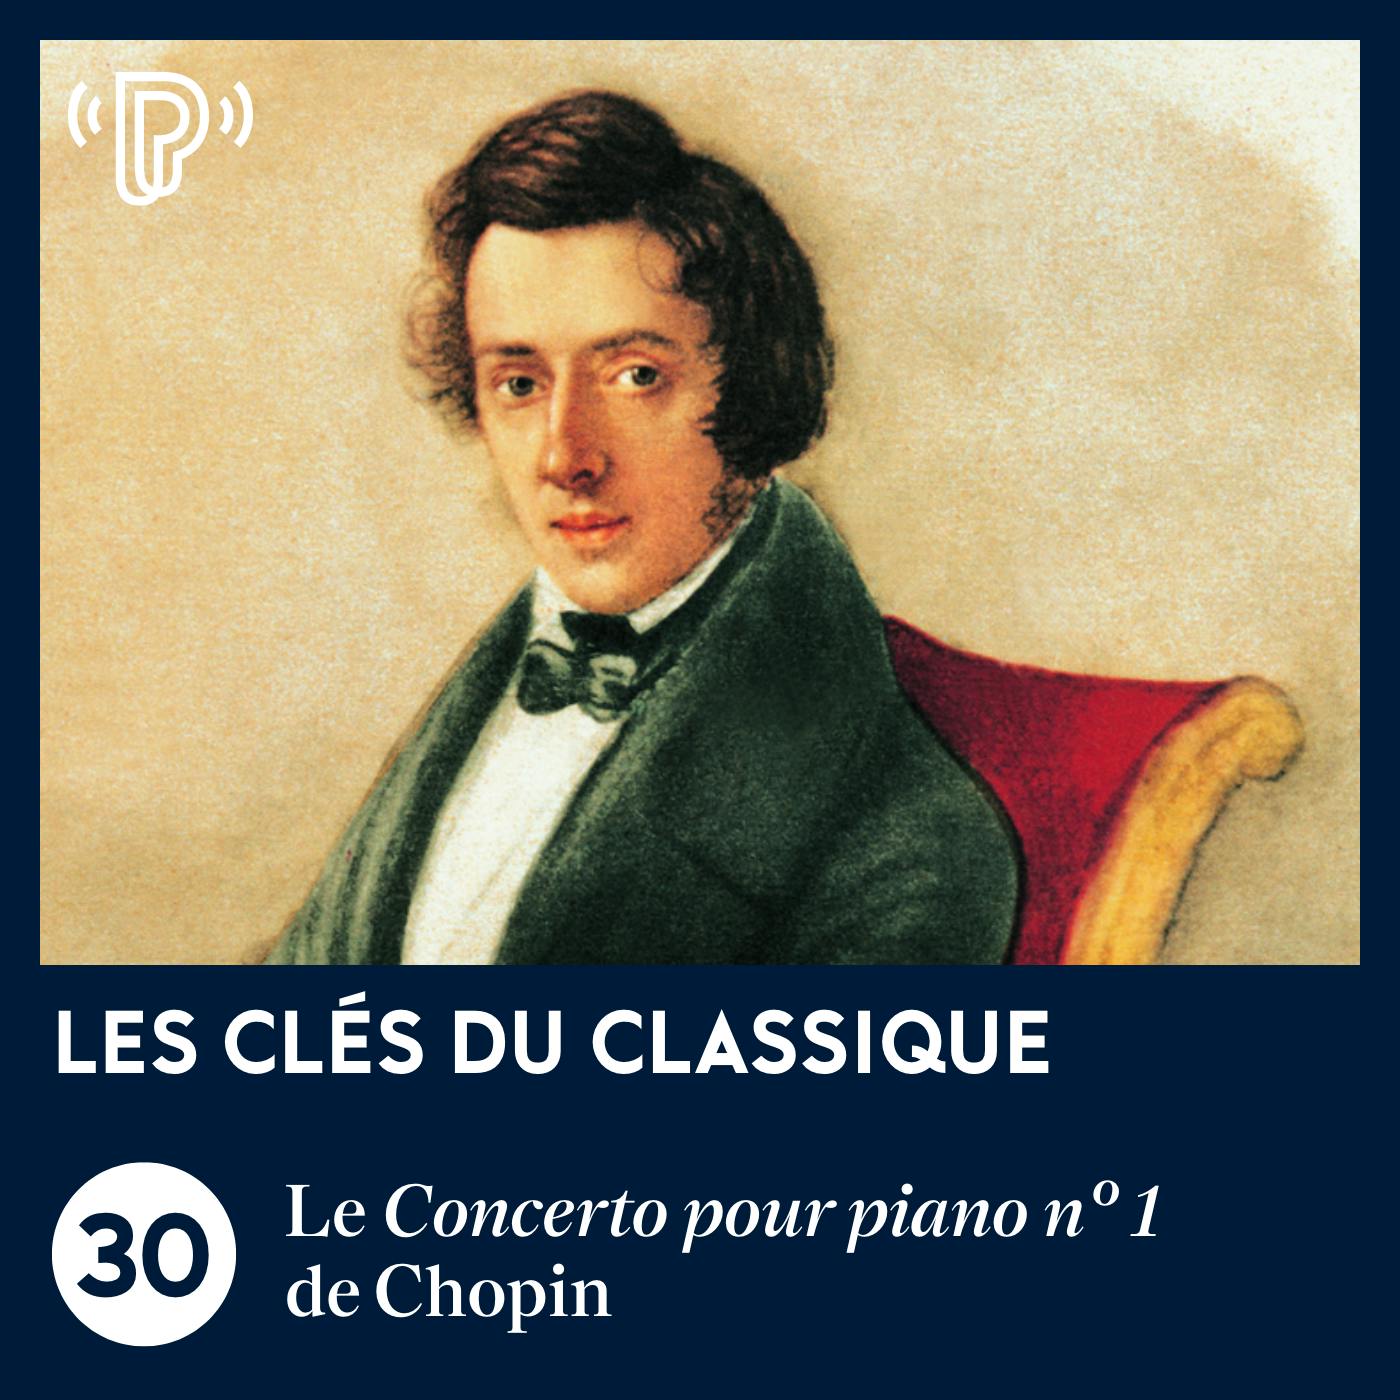 Le Concerto pour piano n° 1 de Chopin | Les Clés du classique #30